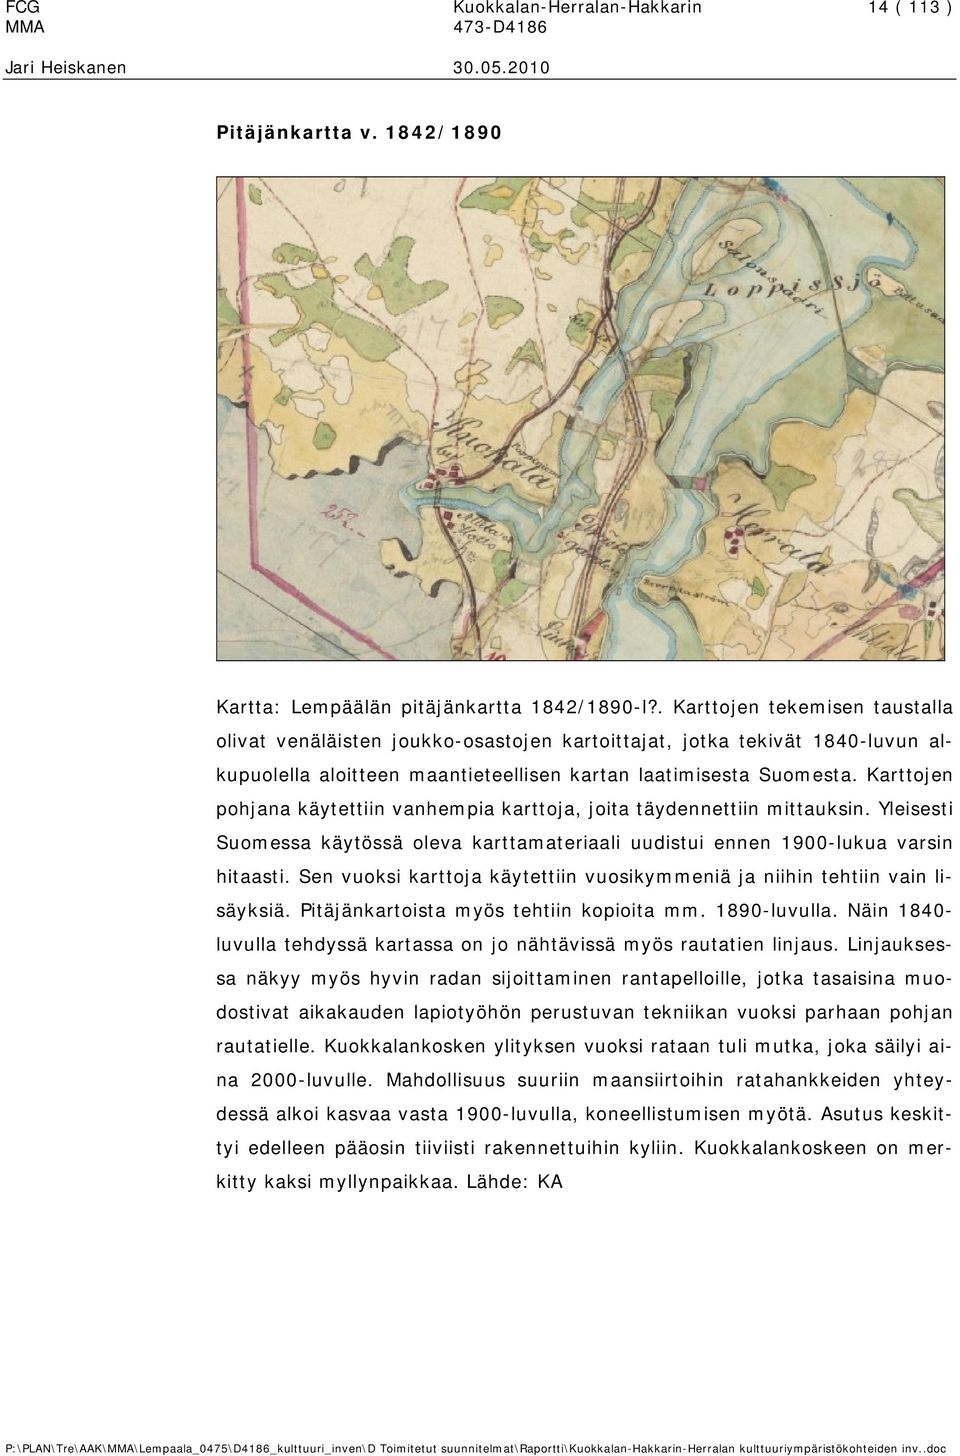 Karttojen pohjana käytettiin vanhempia karttoja, joita täydennettiin mittauksin. Yleisesti Suomessa käytössä oleva karttamateriaali uudistui ennen 1900-lukua varsin hitaasti.